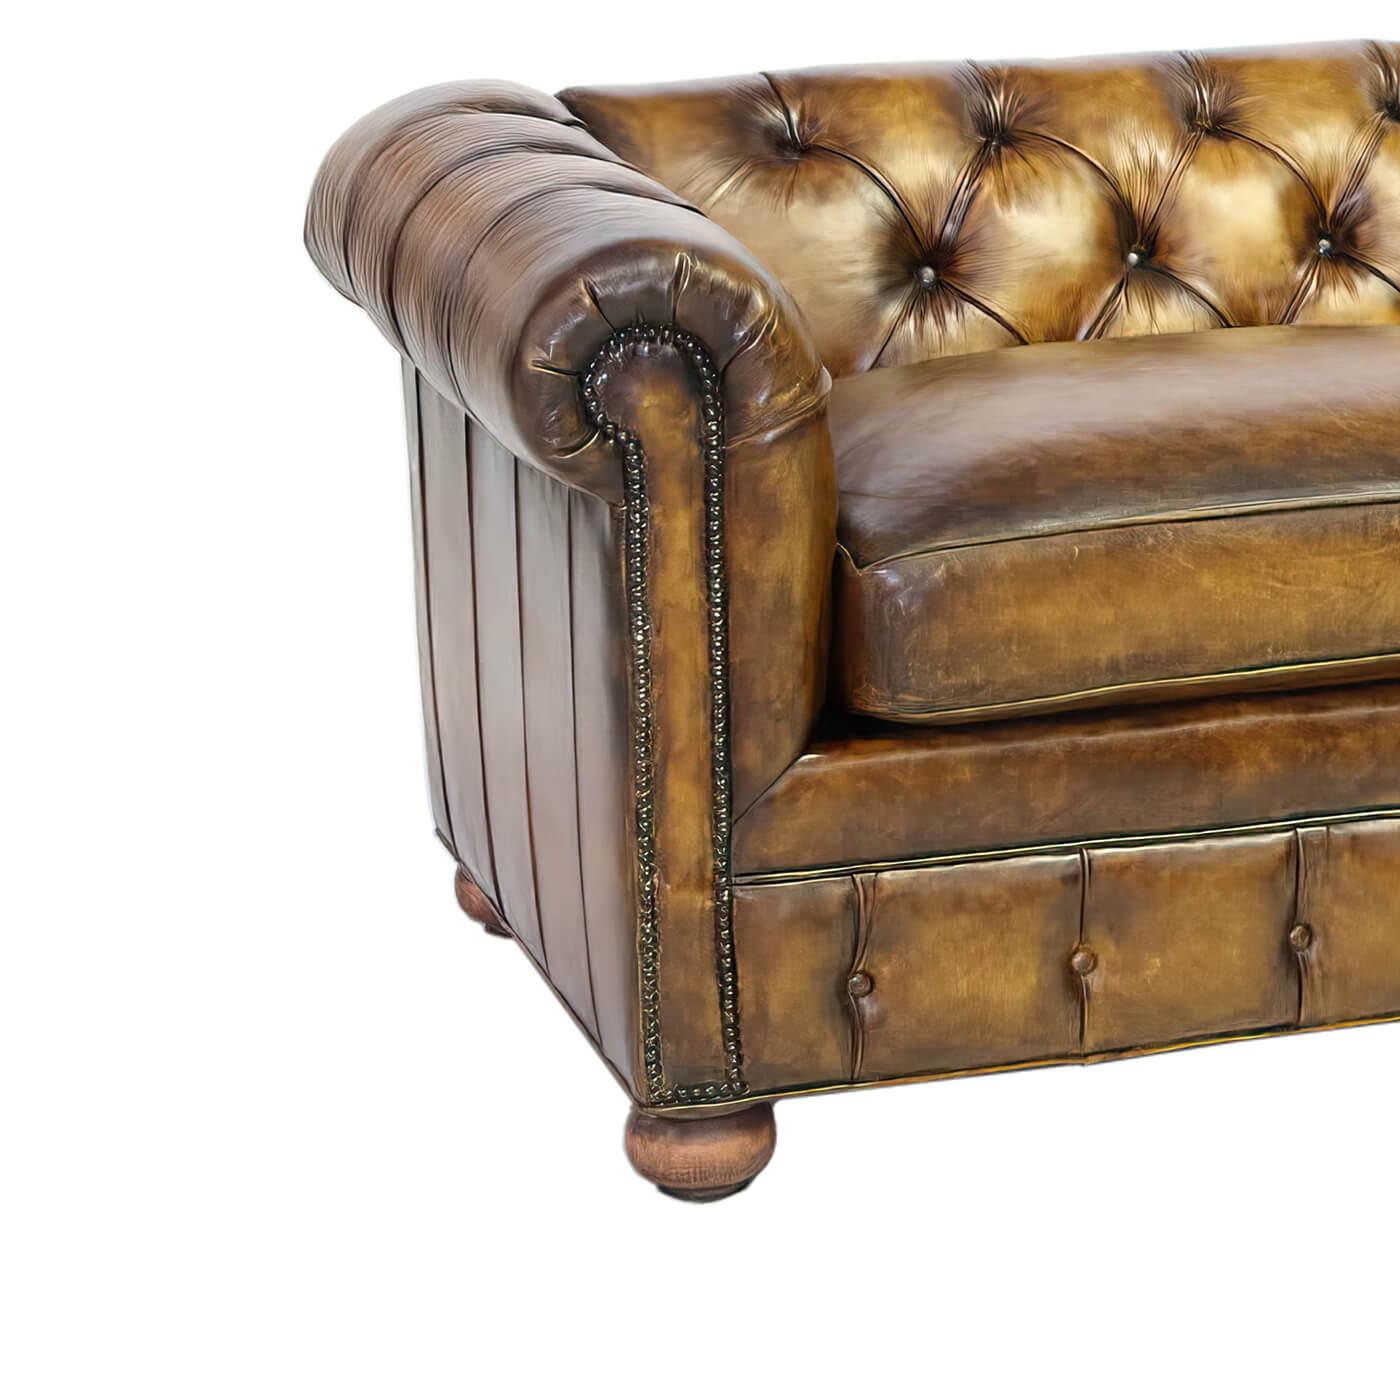 Dieses Chesterfield-Sofa stammt aus unserer in den USA ansässigen Polsterei und Gerberei. Es ist individuell anpassbar und wird mit einer unserer vielen verfügbaren Lederarten hergestellt. Diese traditionellen Chesterfields sind in verwitterter und